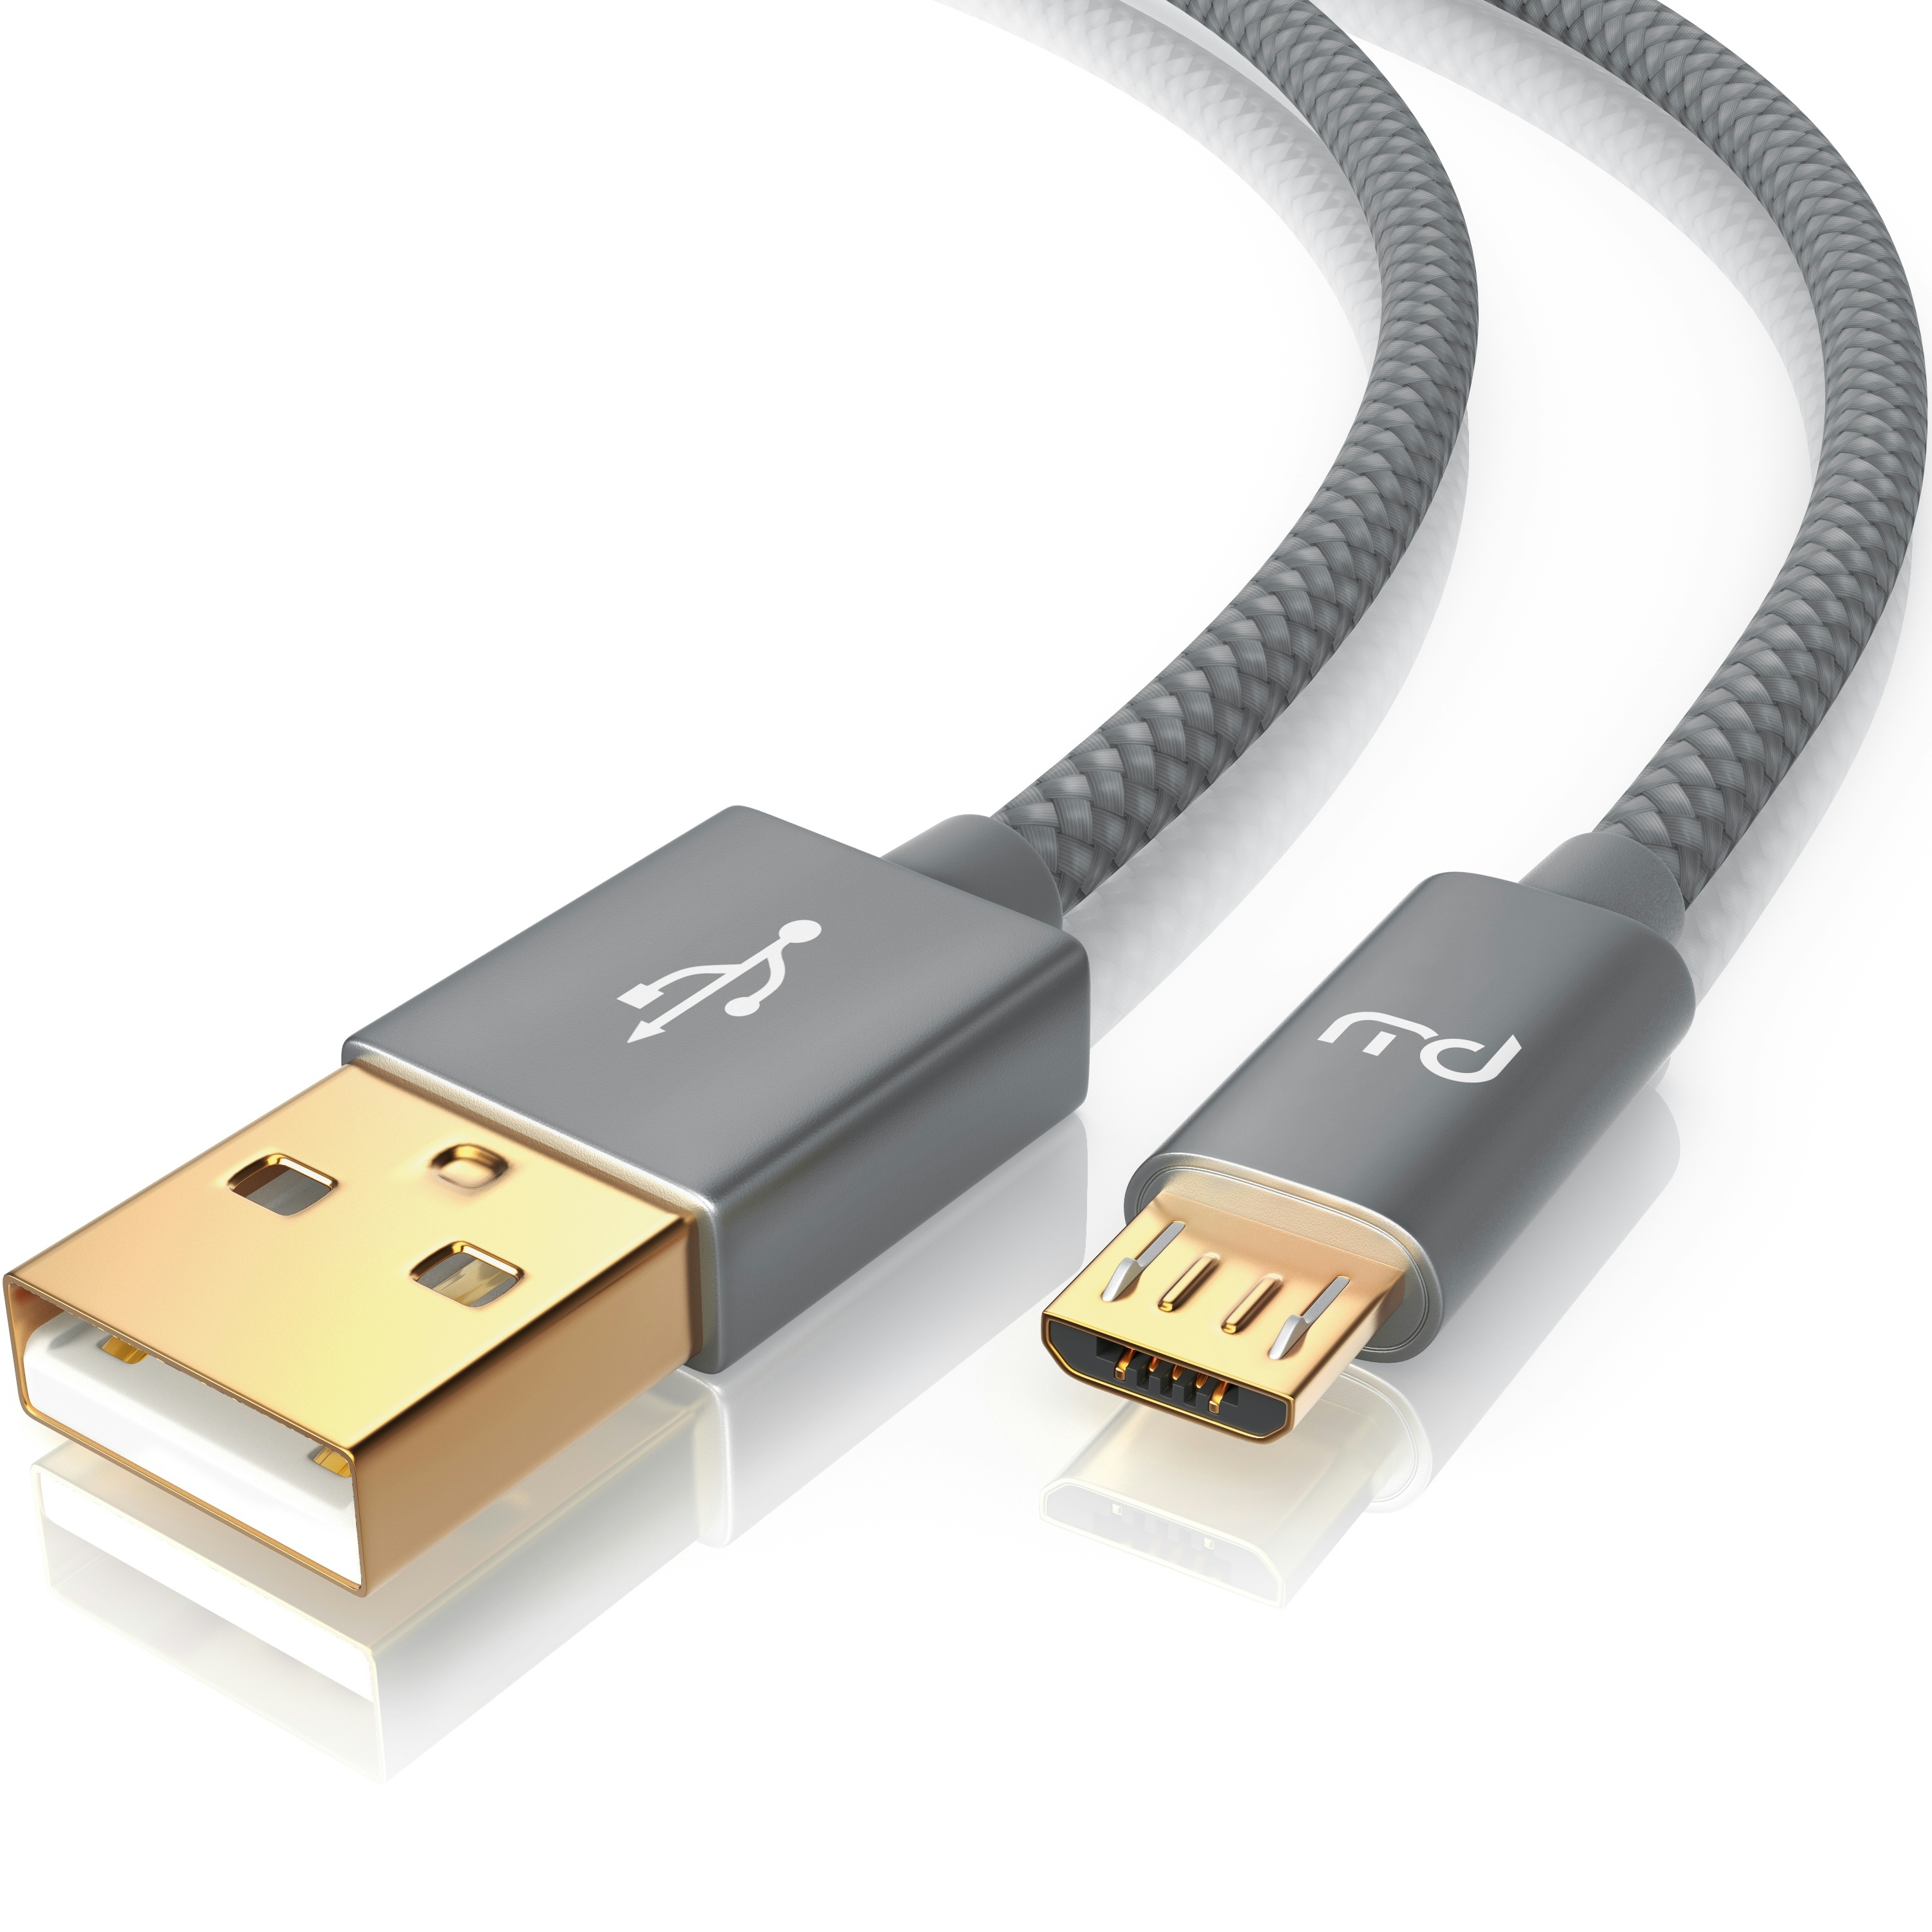 Primewire Premium Micro USB 2,4A Schnellladekabel - Nylonkabel Metallstecker - High Speed Ladekabel / Datenkabel - 5m